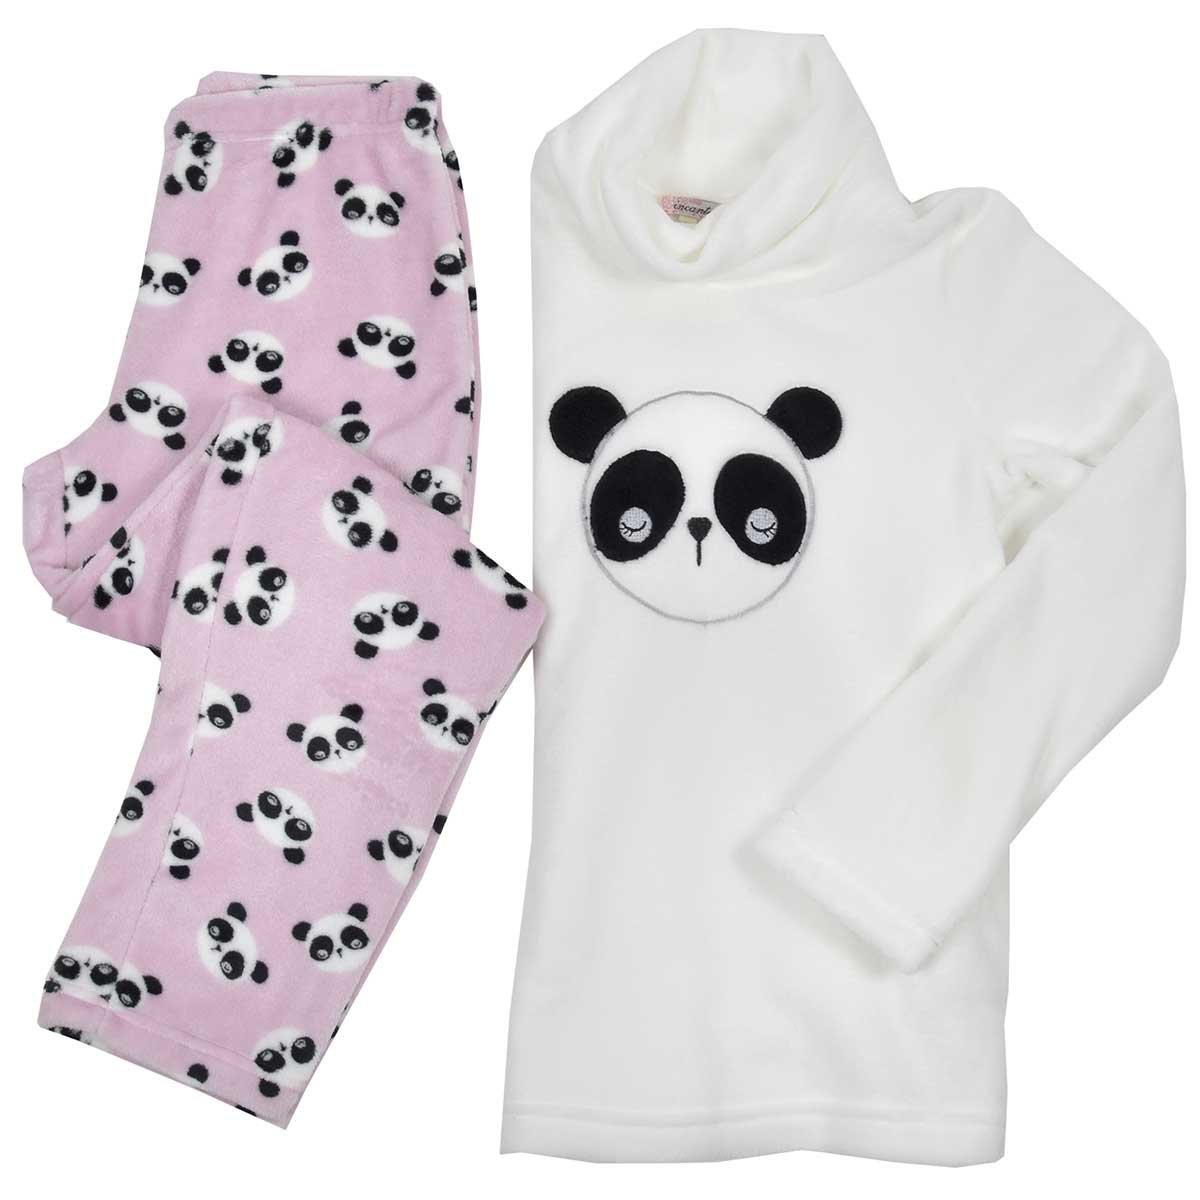 Pijama Flannel Play de Cuello Alto Estampado de Panda Incanto